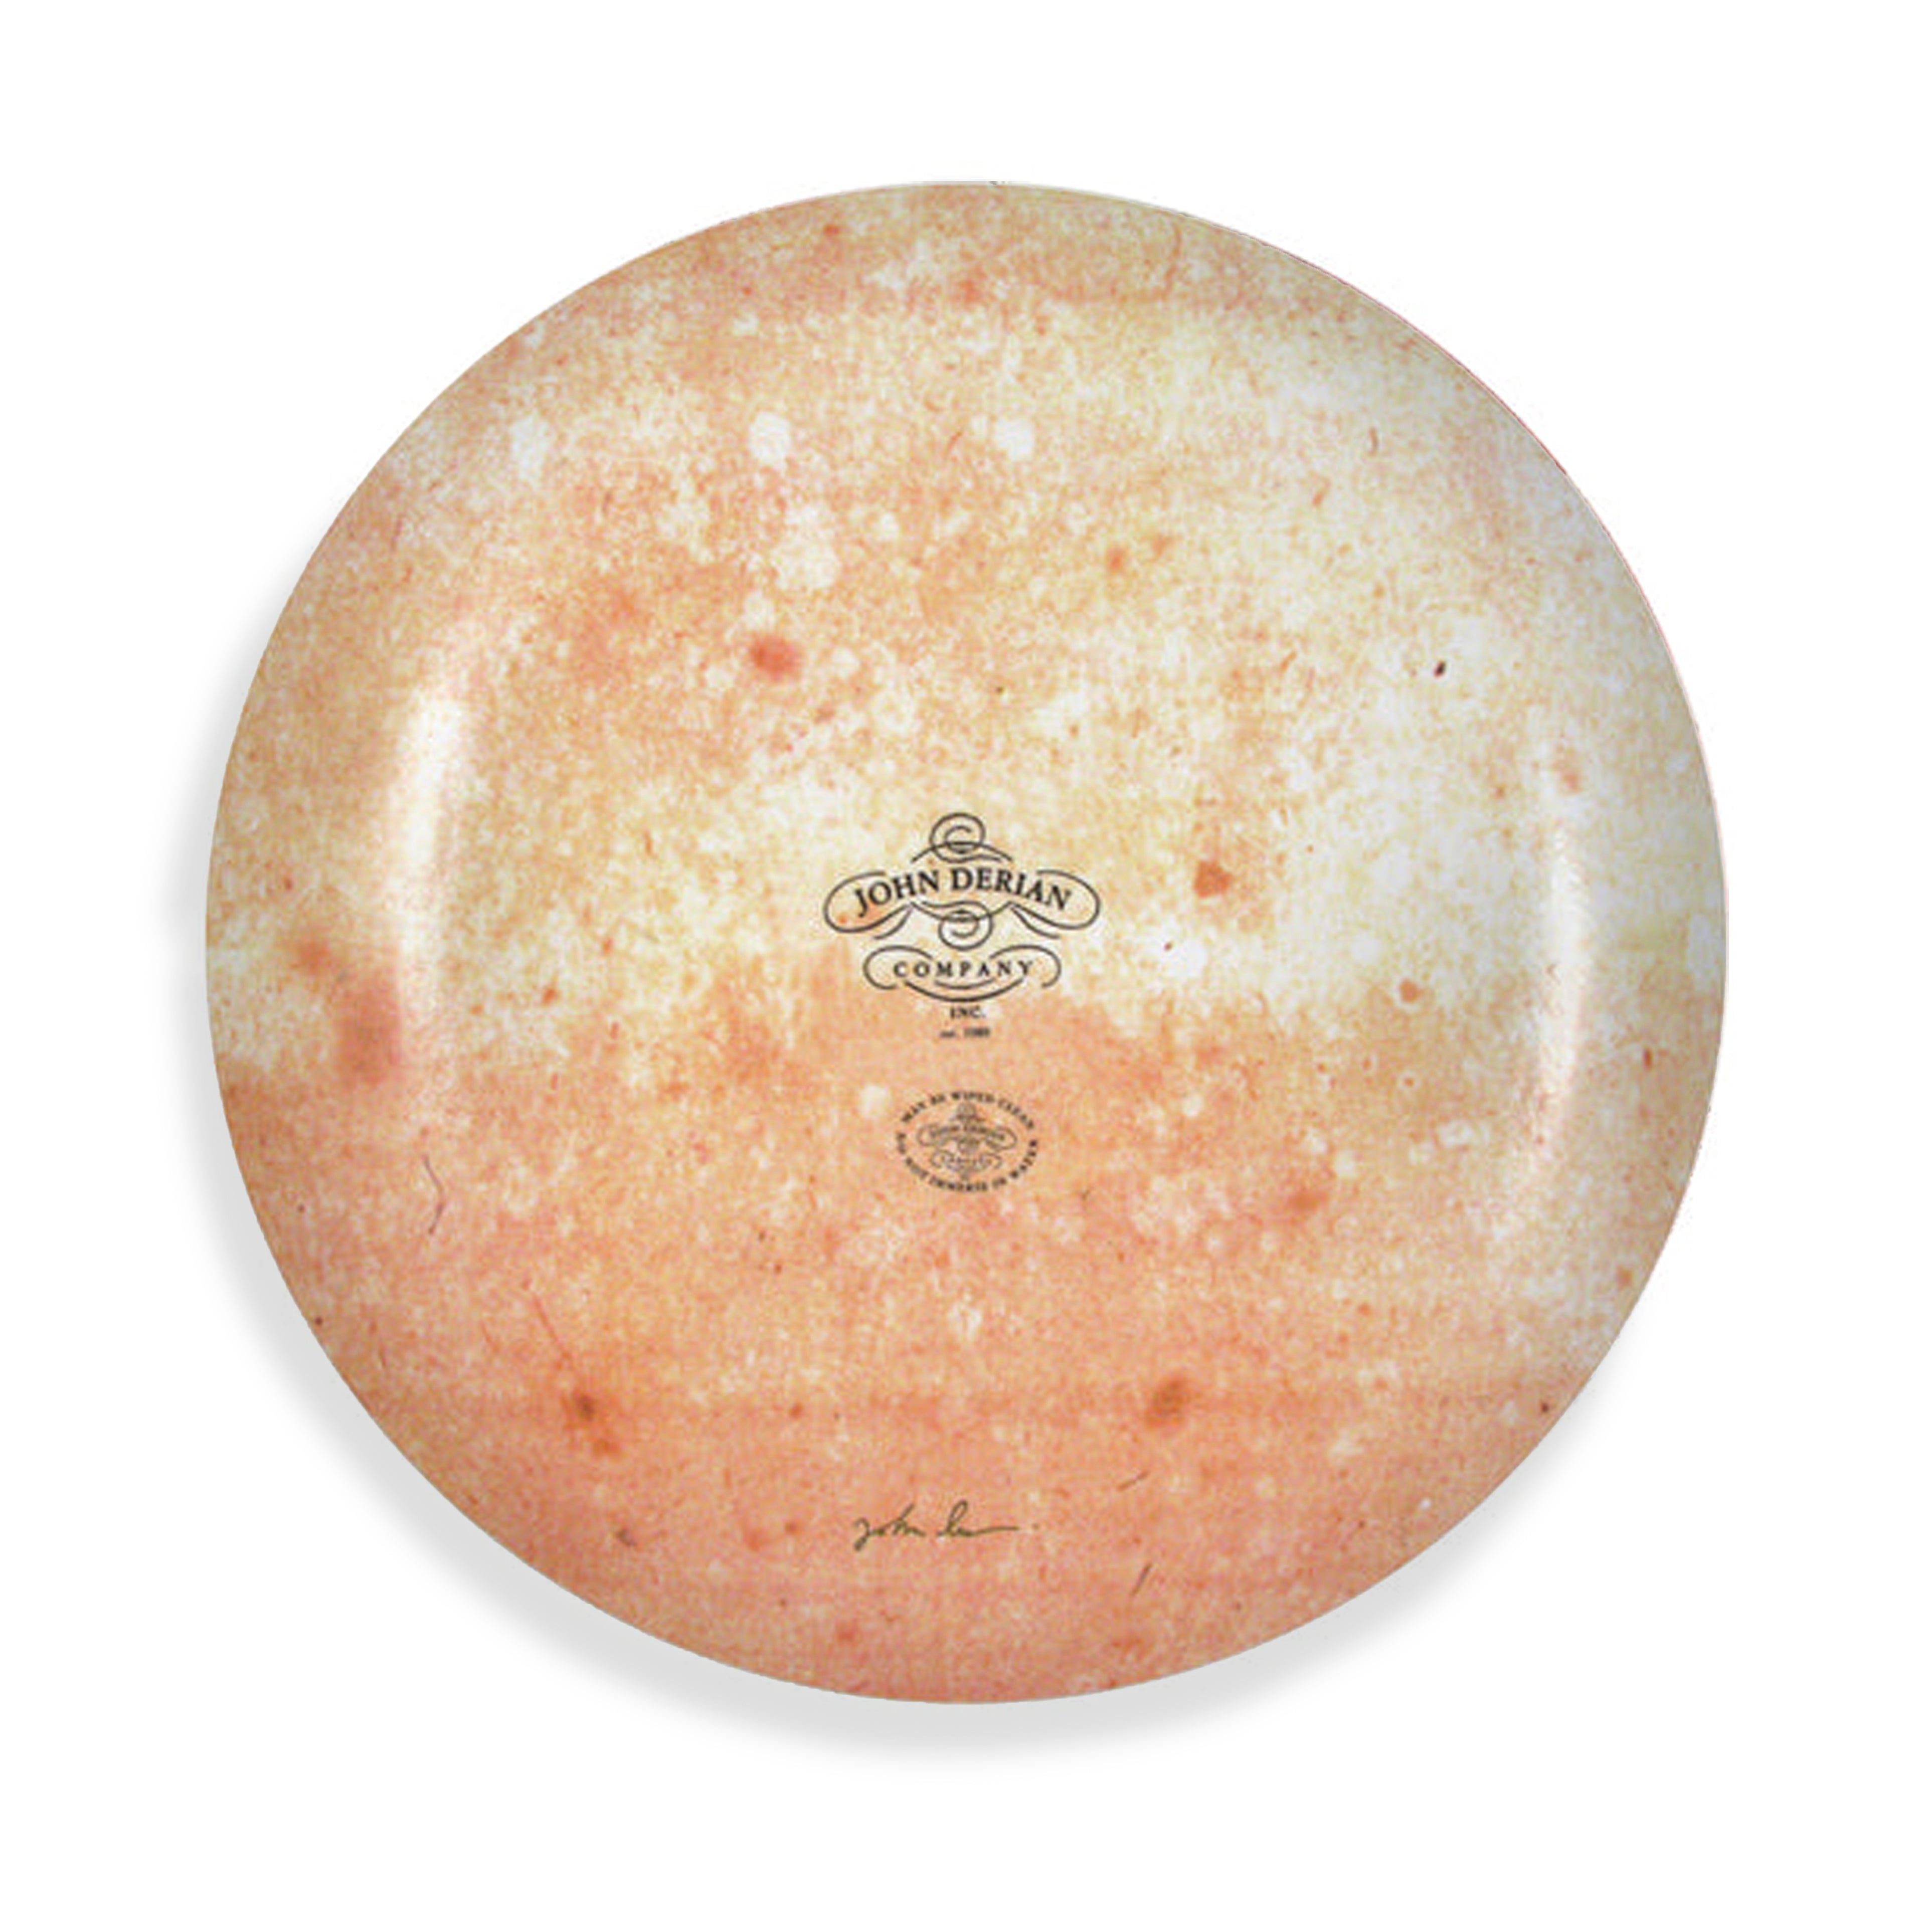 John Derian Stemmed Rose Round Platter, 40.5cm